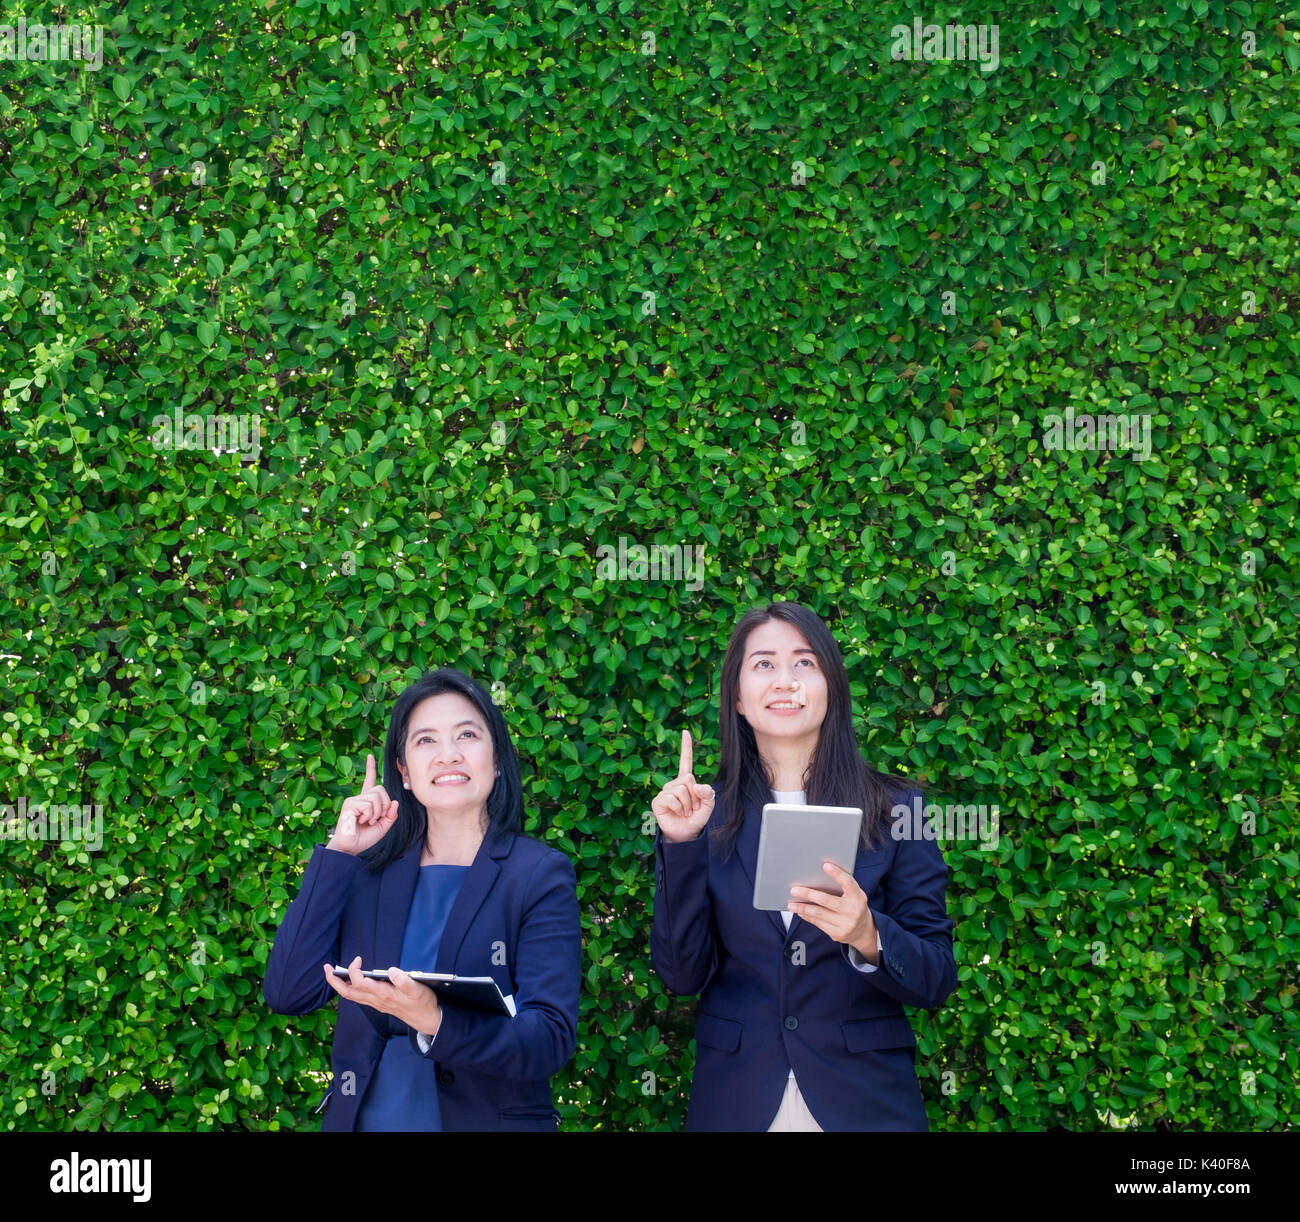 Zwei asiatische Geschäftsfrau Holding Tablet und Punkt-finger bis zu Luft mit denken Action am grünen Blatt Wand, lassen textfreiraum zum Hinzufügen von Text oder Design, N Stockfoto